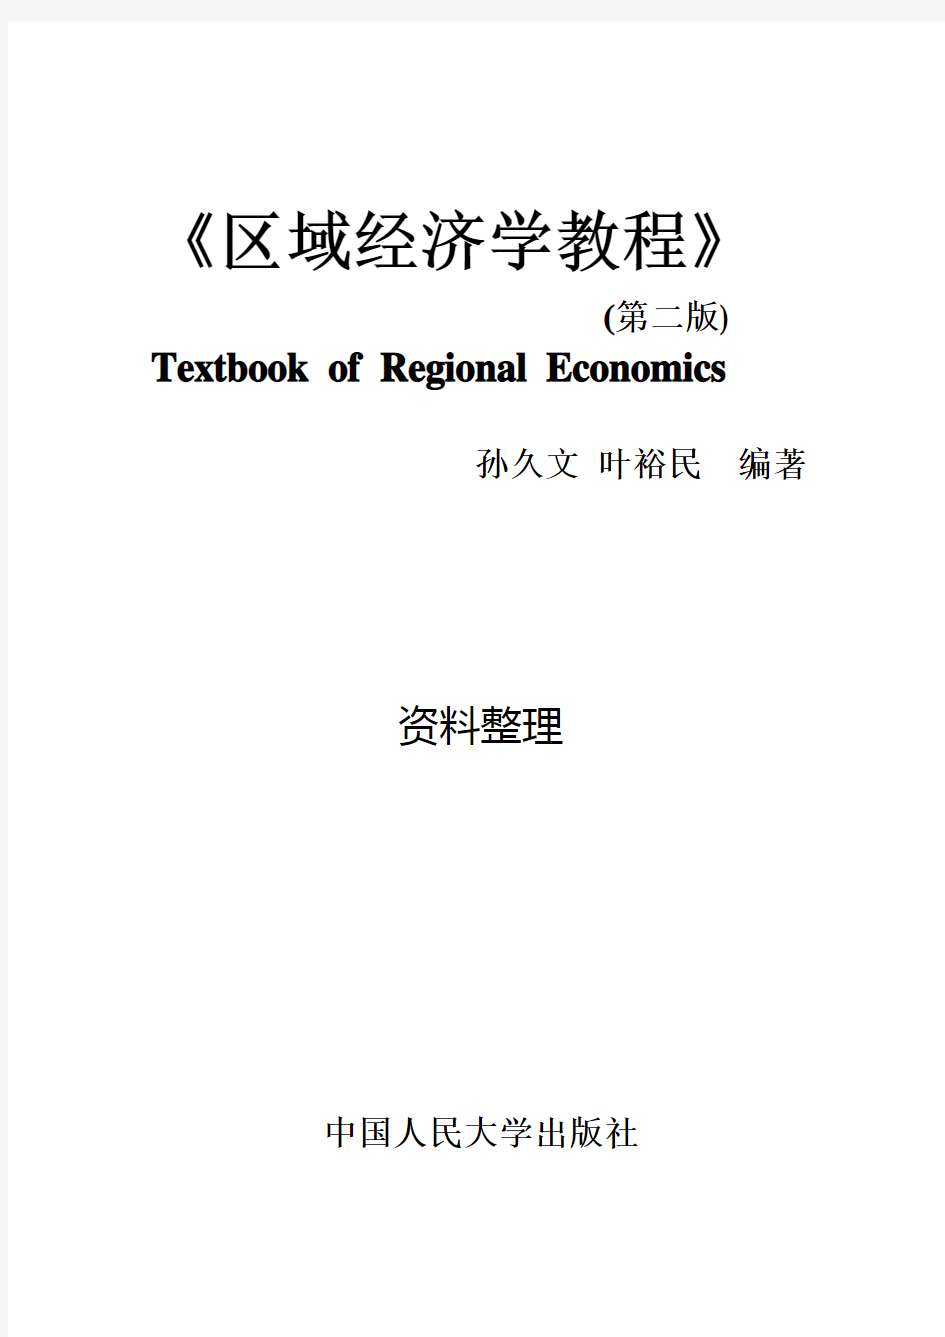 孙久文《区域经济学教程》名词解释与简答题整理